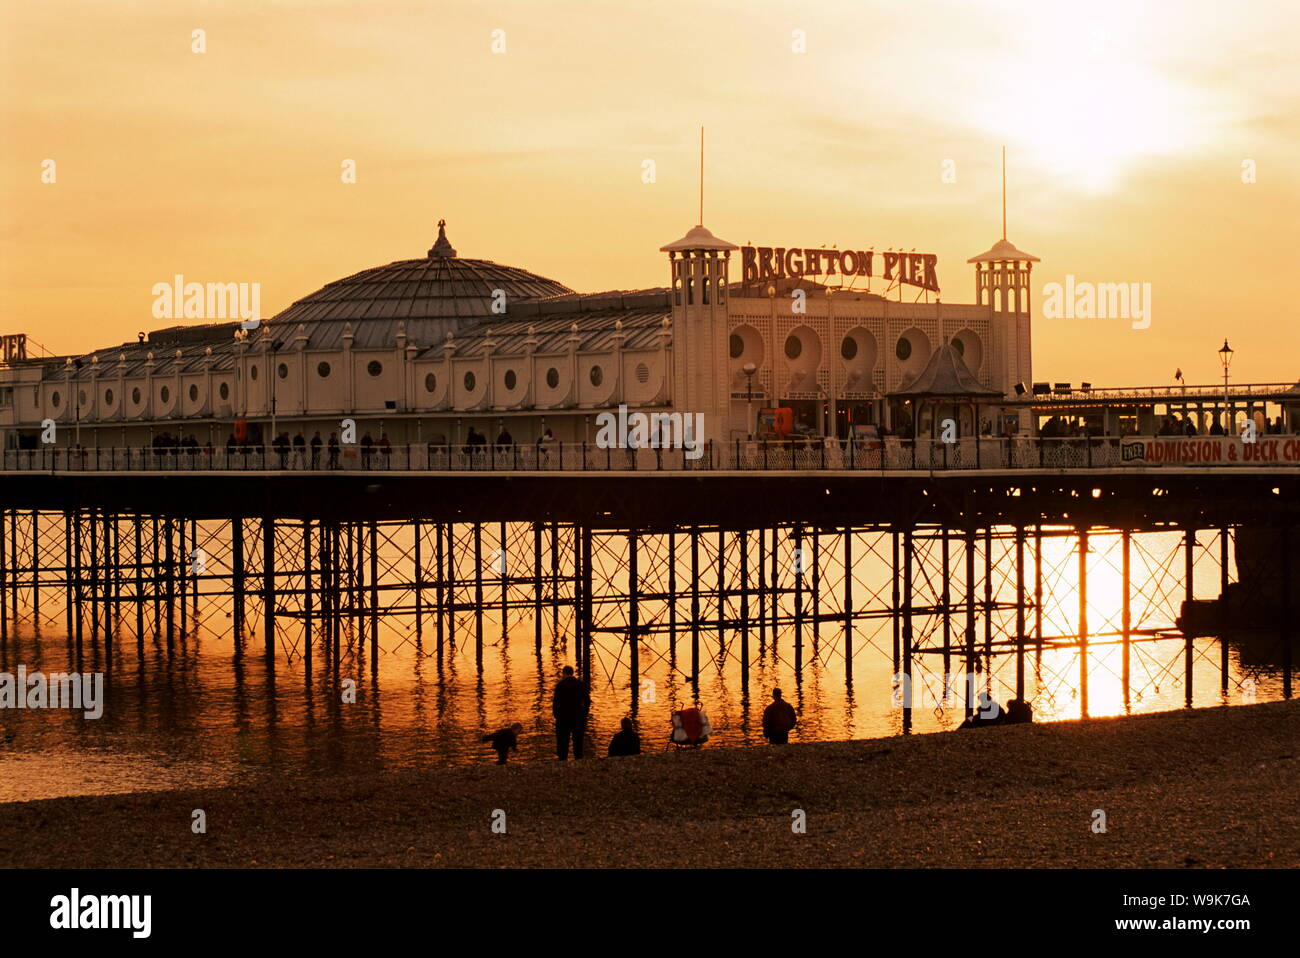 La jetée de Brighton au coucher du soleil, Brighton, East Sussex, Angleterre, Royaume-Uni, Europe Banque D'Images